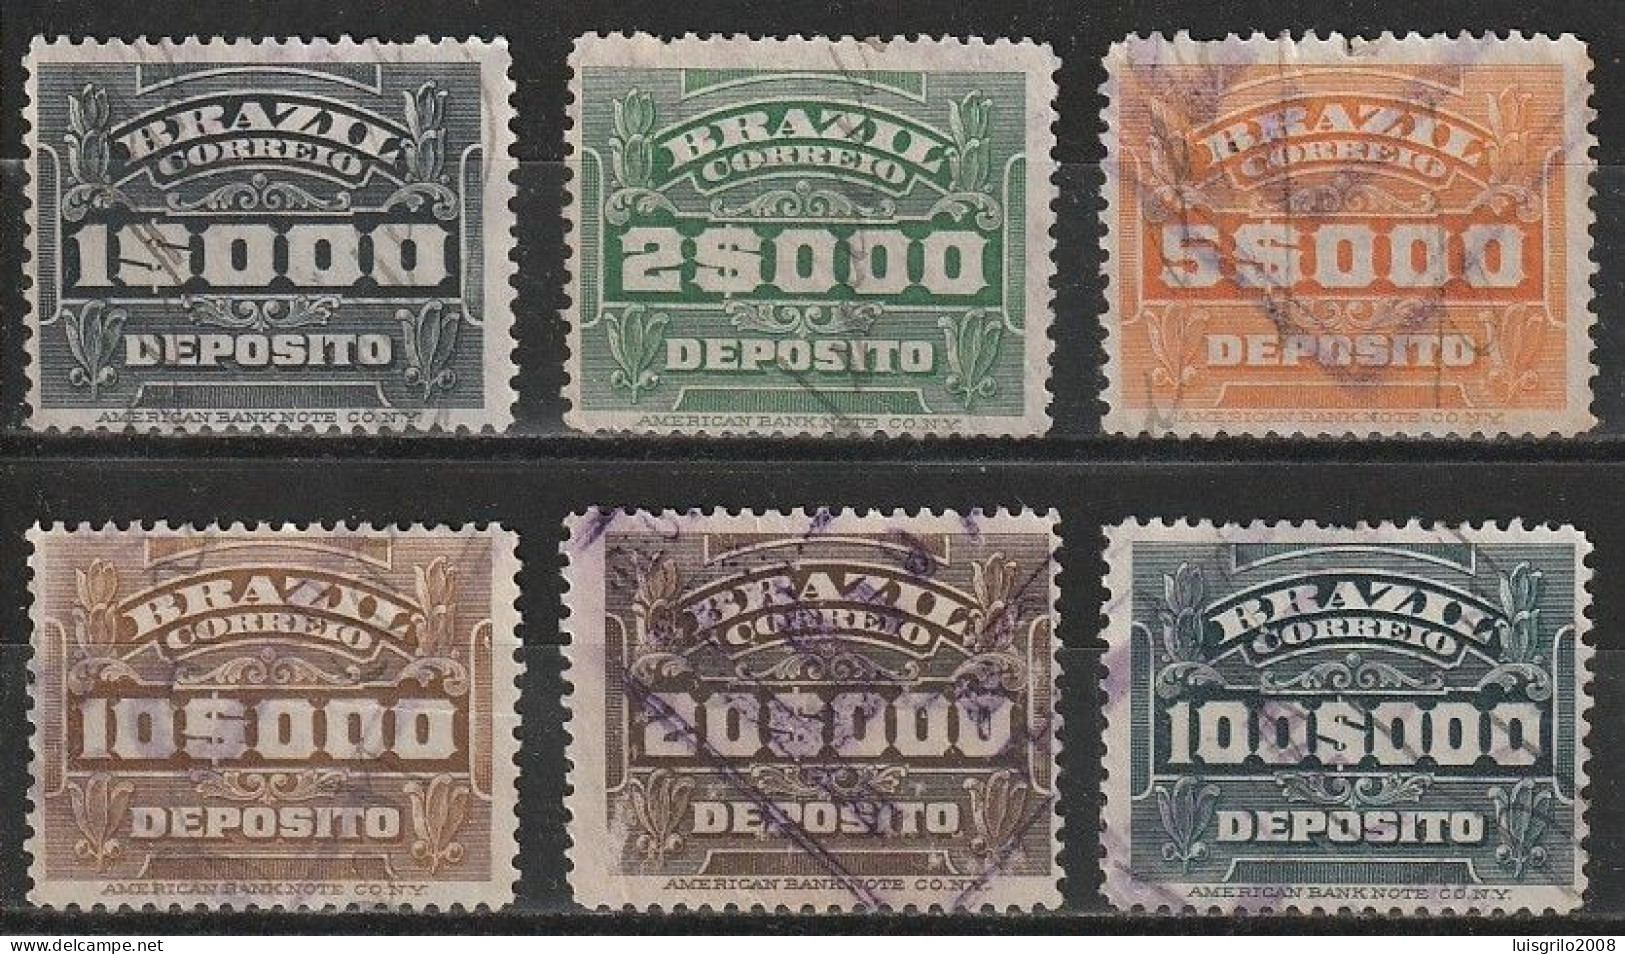 Revenue/ Fiscaux, Brazil 1920 - Depósito, Receita Fiscal -|- 1$000, 2$000, 5$000, 10$000, 20$000, 100$000 - Service